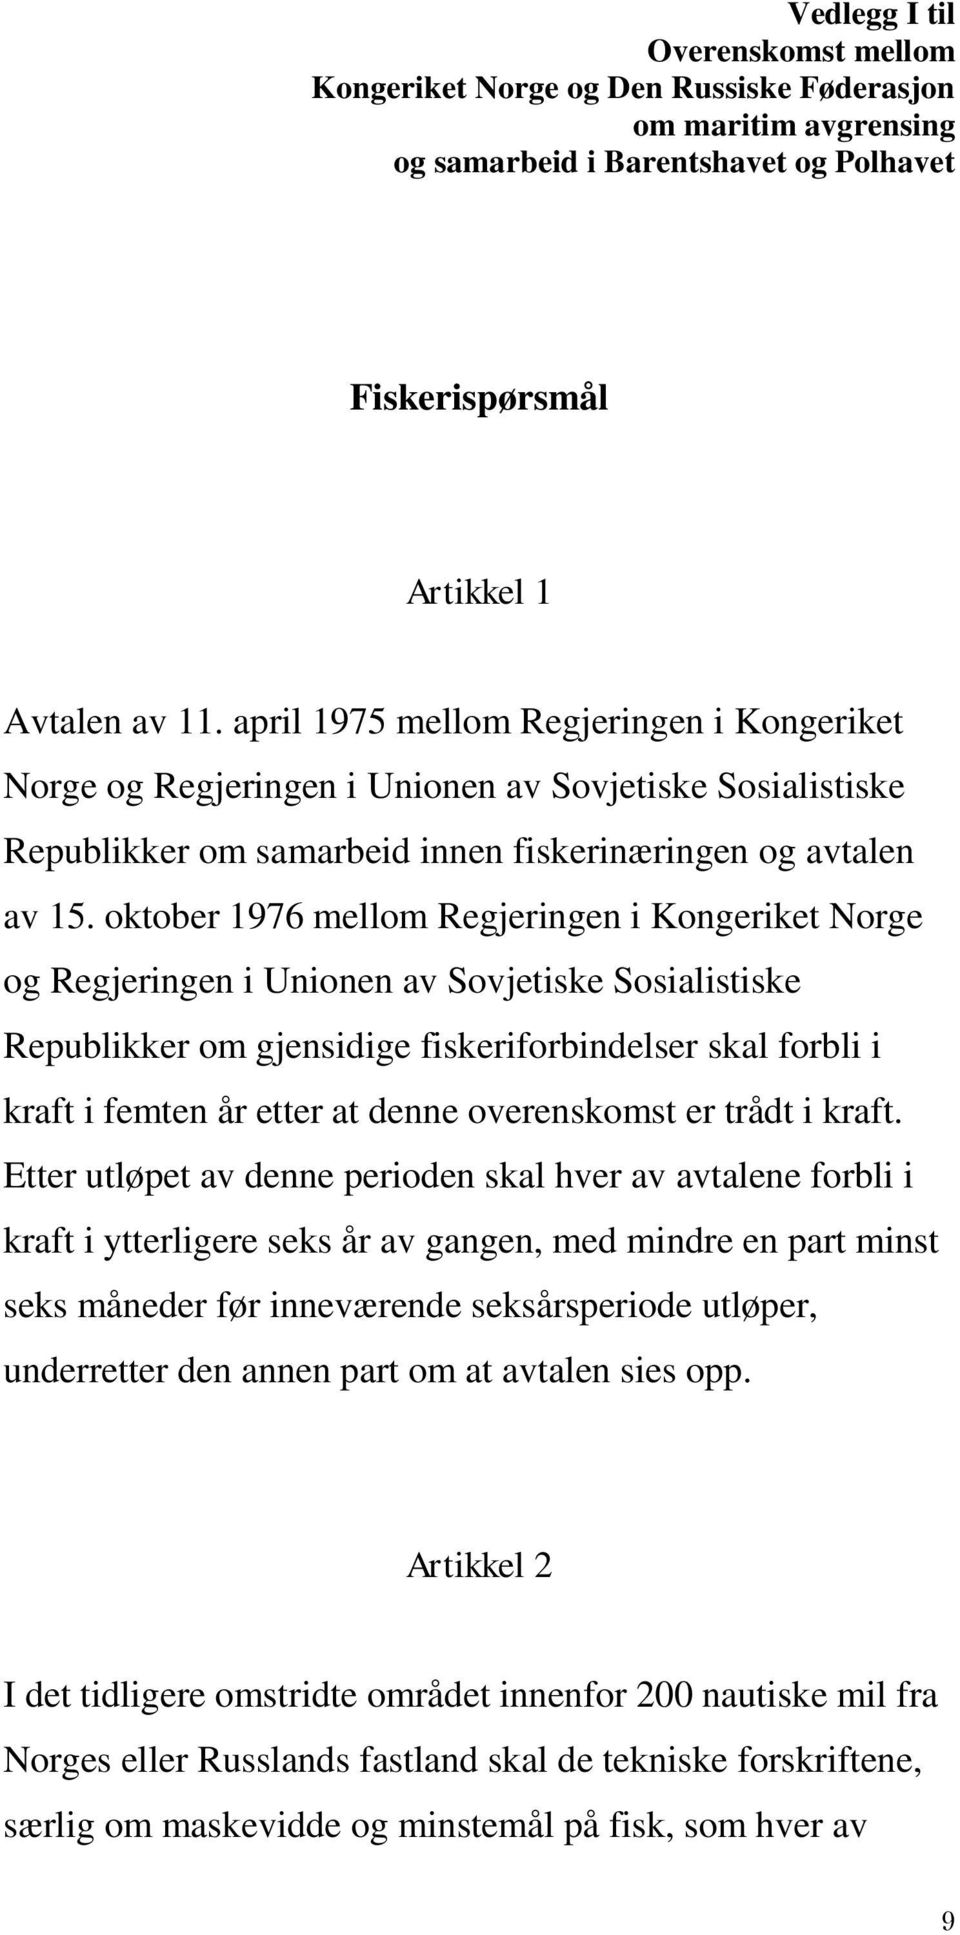 oktober 1976 mellom Regjeringen i Kongeriket Norge og Regjeringen i Unionen av Sovjetiske Sosialistiske Republikker om gjensidige fiskeriforbindelser skal forbli i kraft i femten år etter at denne